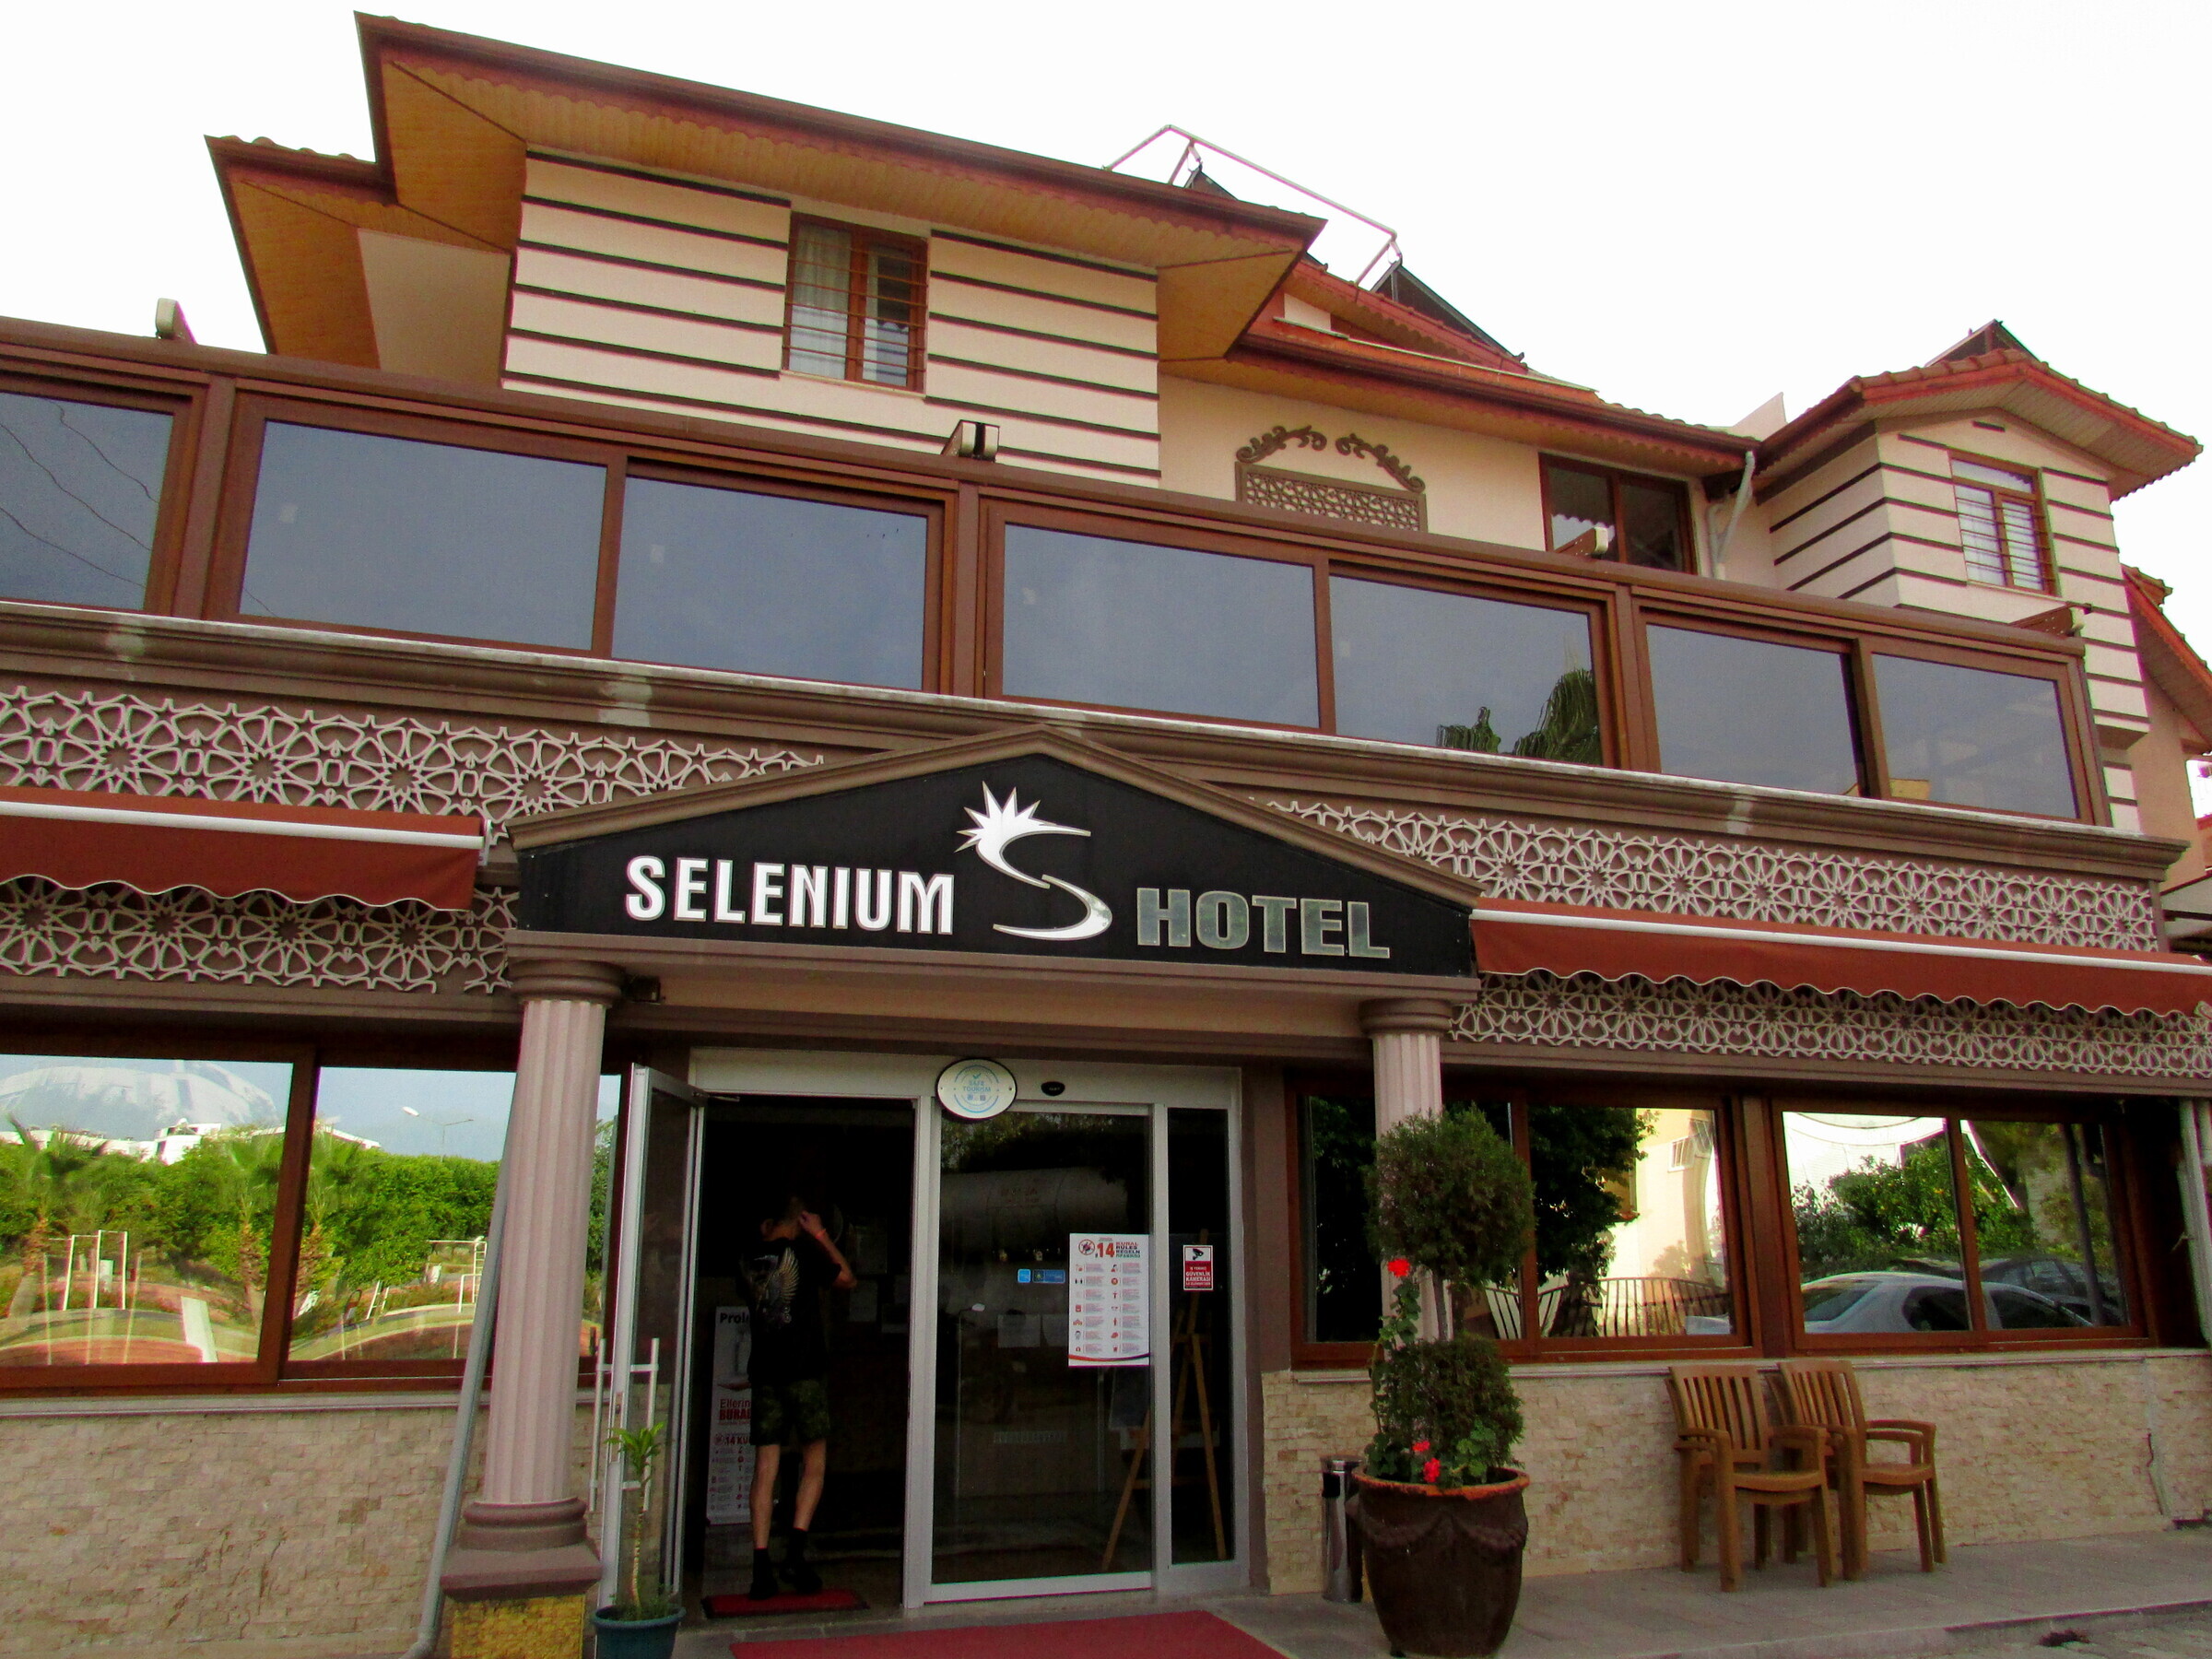 Сайт селен отель. Отель Selenium Сиде. Селениум Турция отель Сиде. Сиде / Side Selenium Hotel 4*. Selenium Hotel 3*.